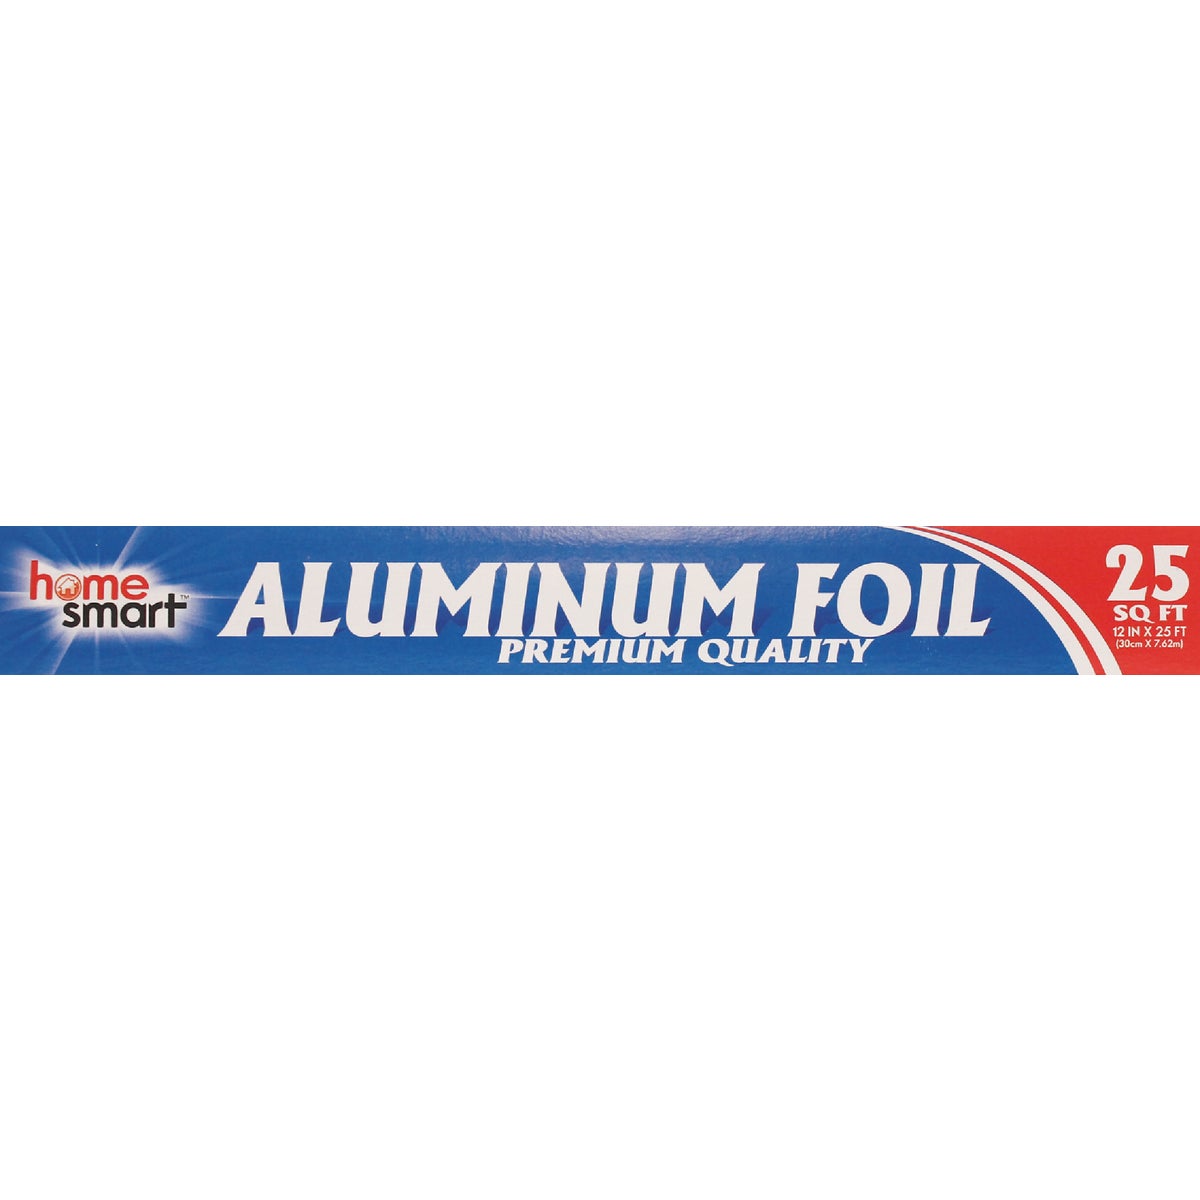 Item 634093, 25 square feet of premier aluminum foil.